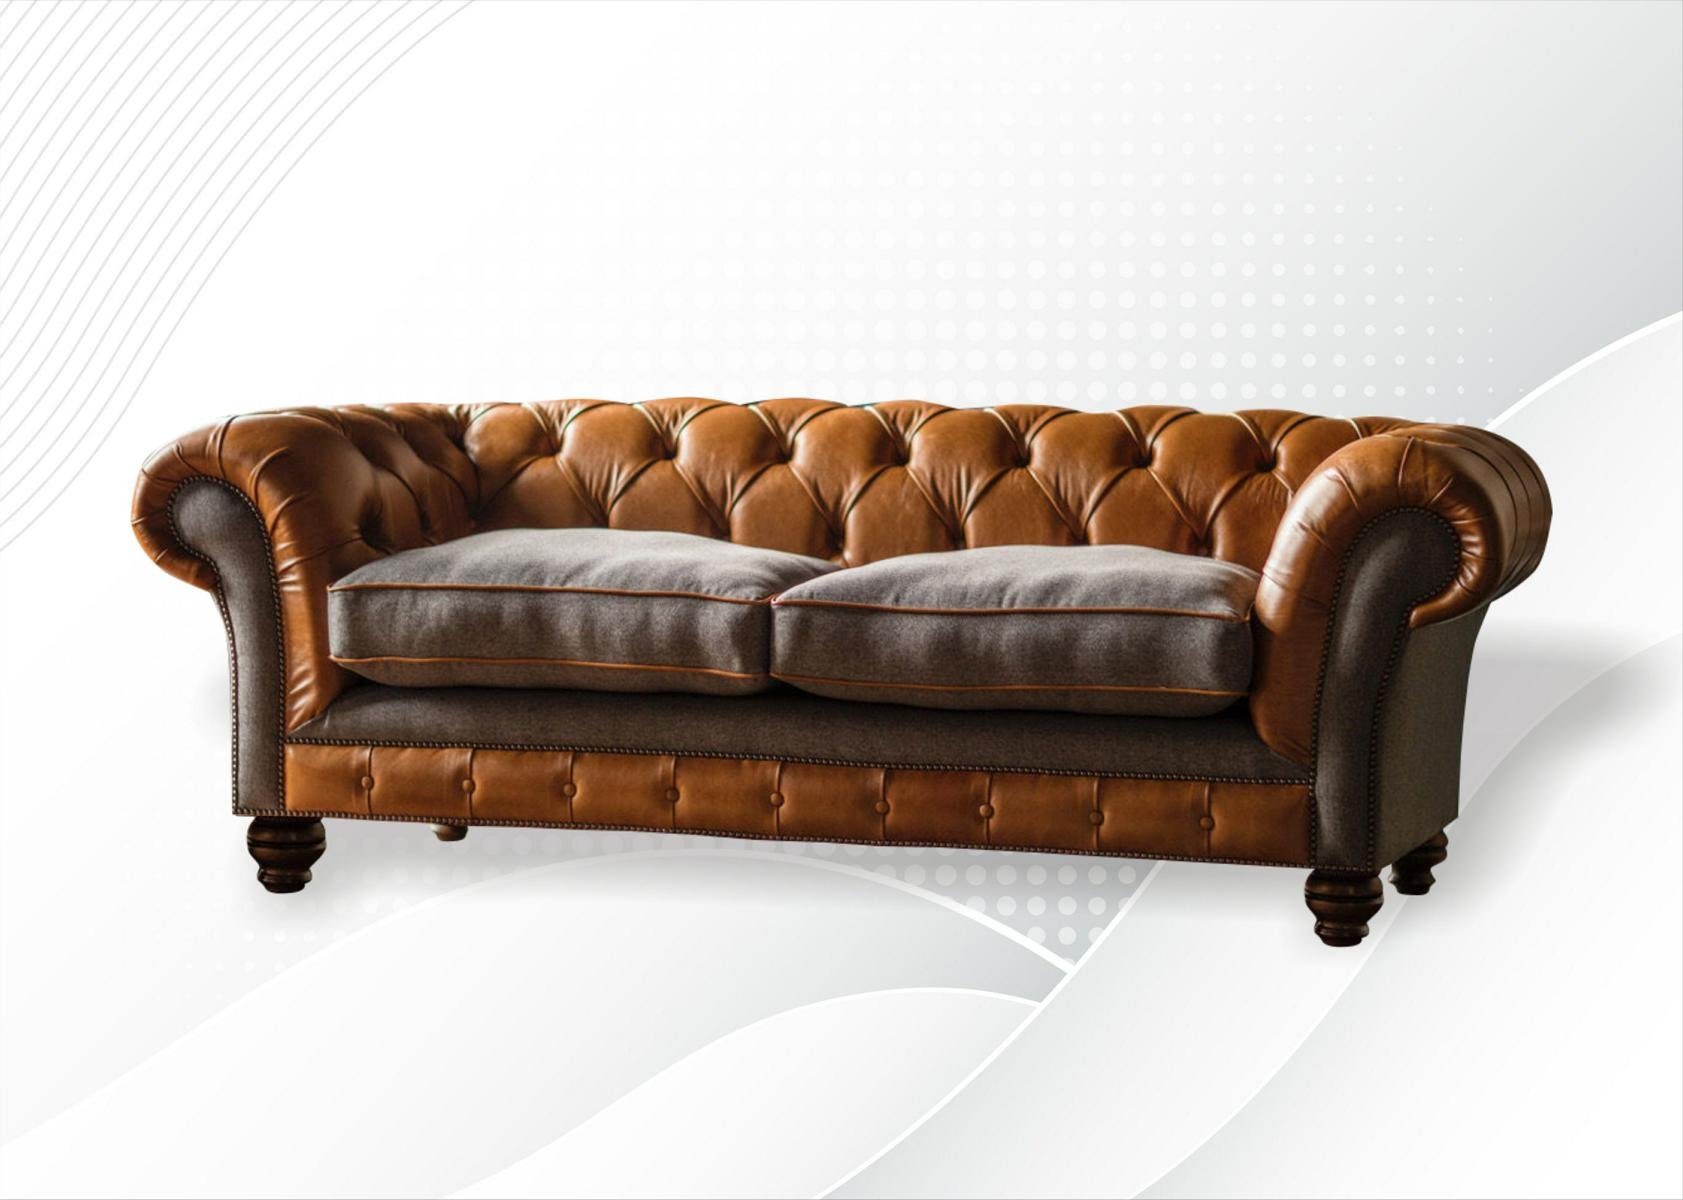 JVmoebel Chesterfield-Sofa, Chesterfield 3 Sitzer Couch Design Sofa Rückenlehne 220 cm, mit Knöpfen. Die